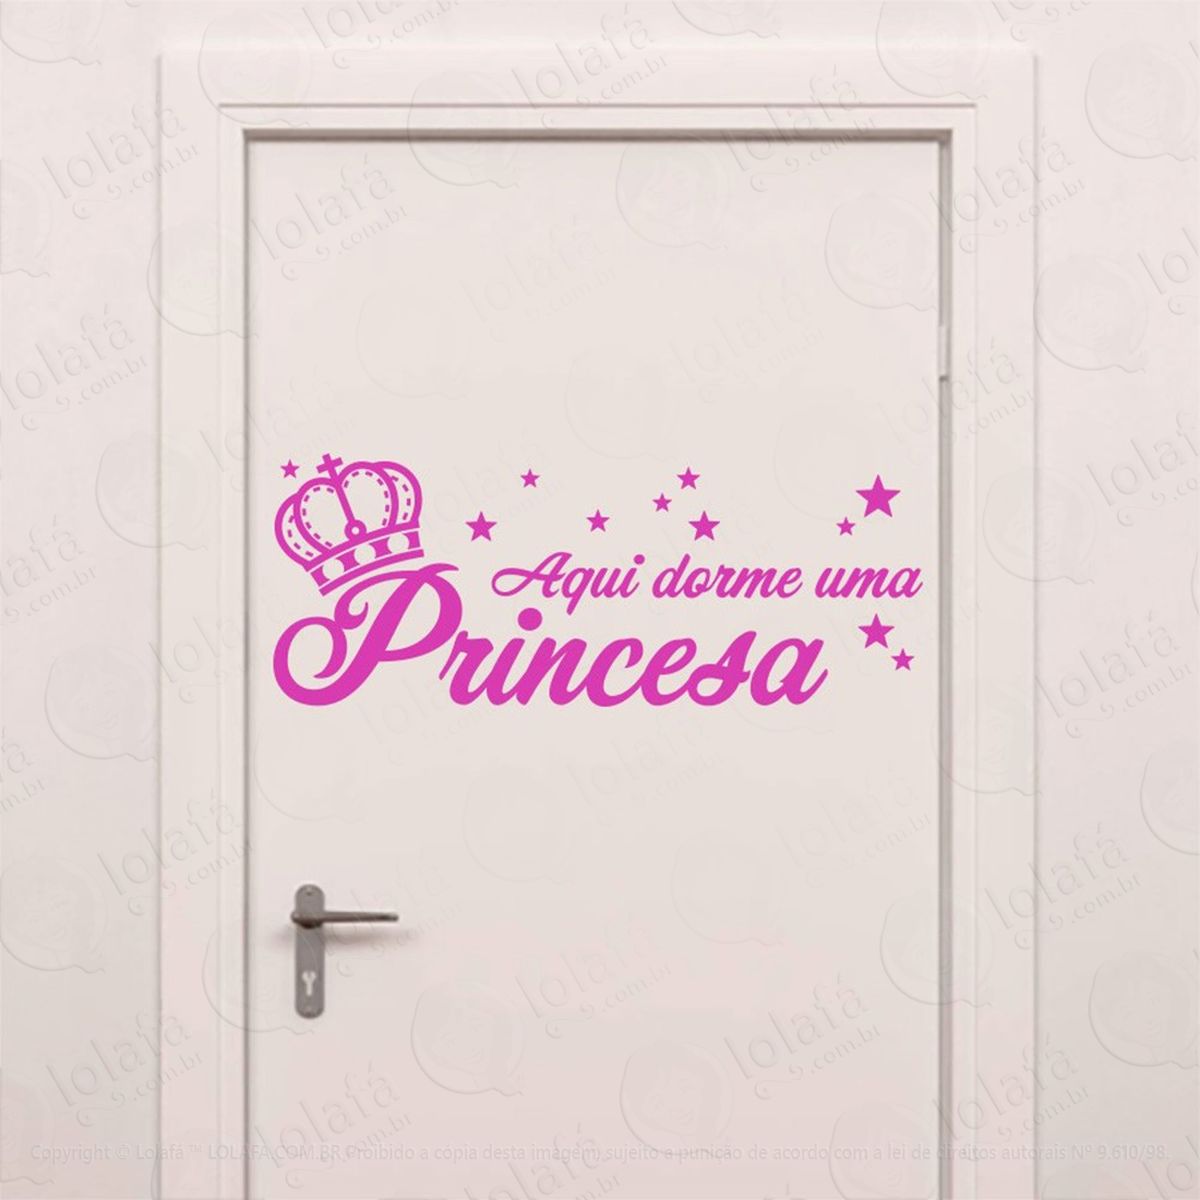 aqui dorme uma princesa adesivo de parede frase personalizada para sala, quarto, porta e vidro - mod:253